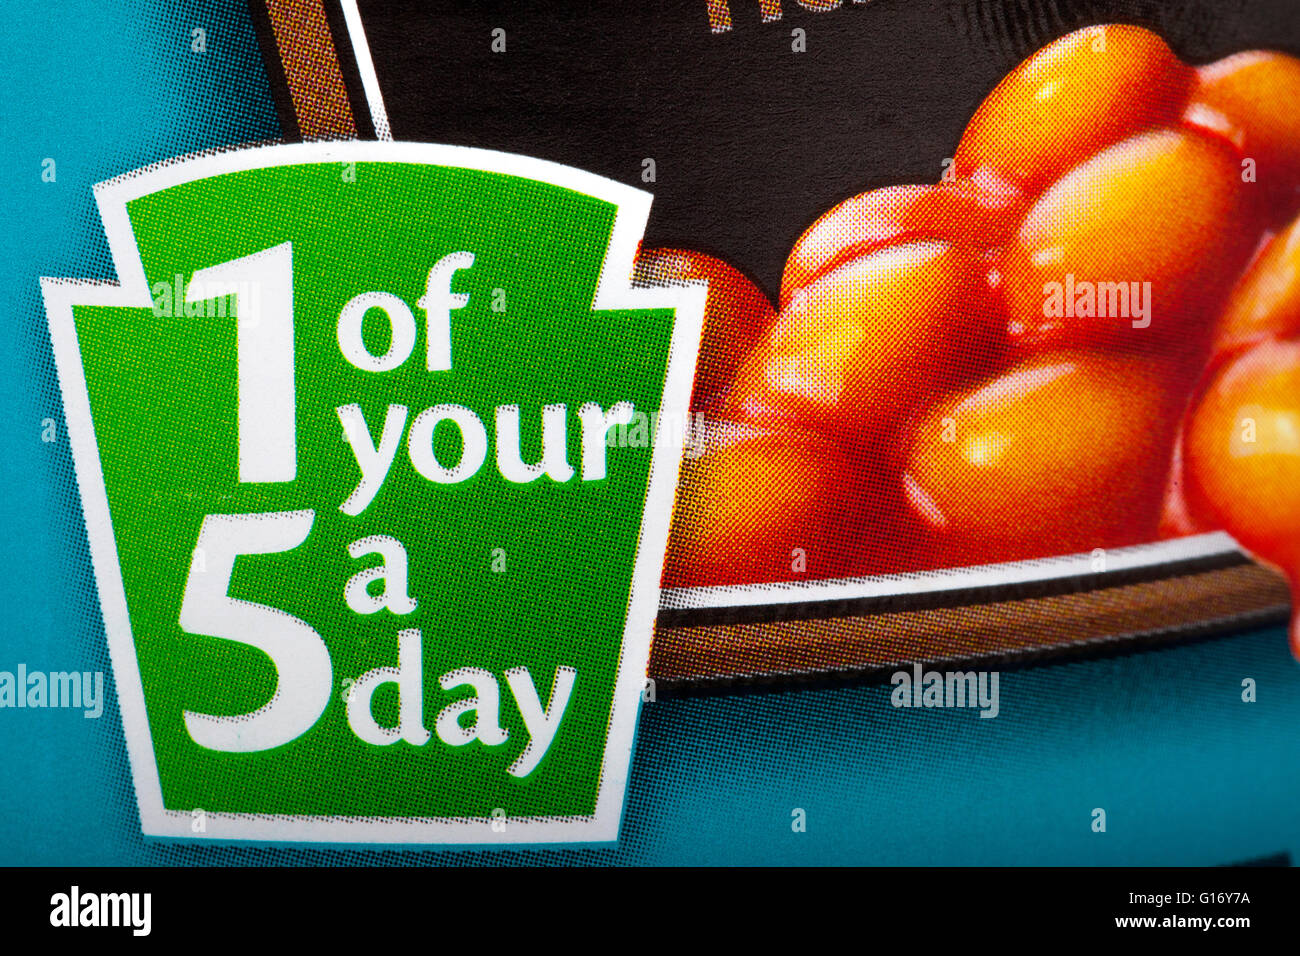 Un segno su una lattina di cibo per informare il consumatore che il contenuto contengono 1 dei vostri 5 raccomandato di frutta e verdura al giorno. Foto Stock